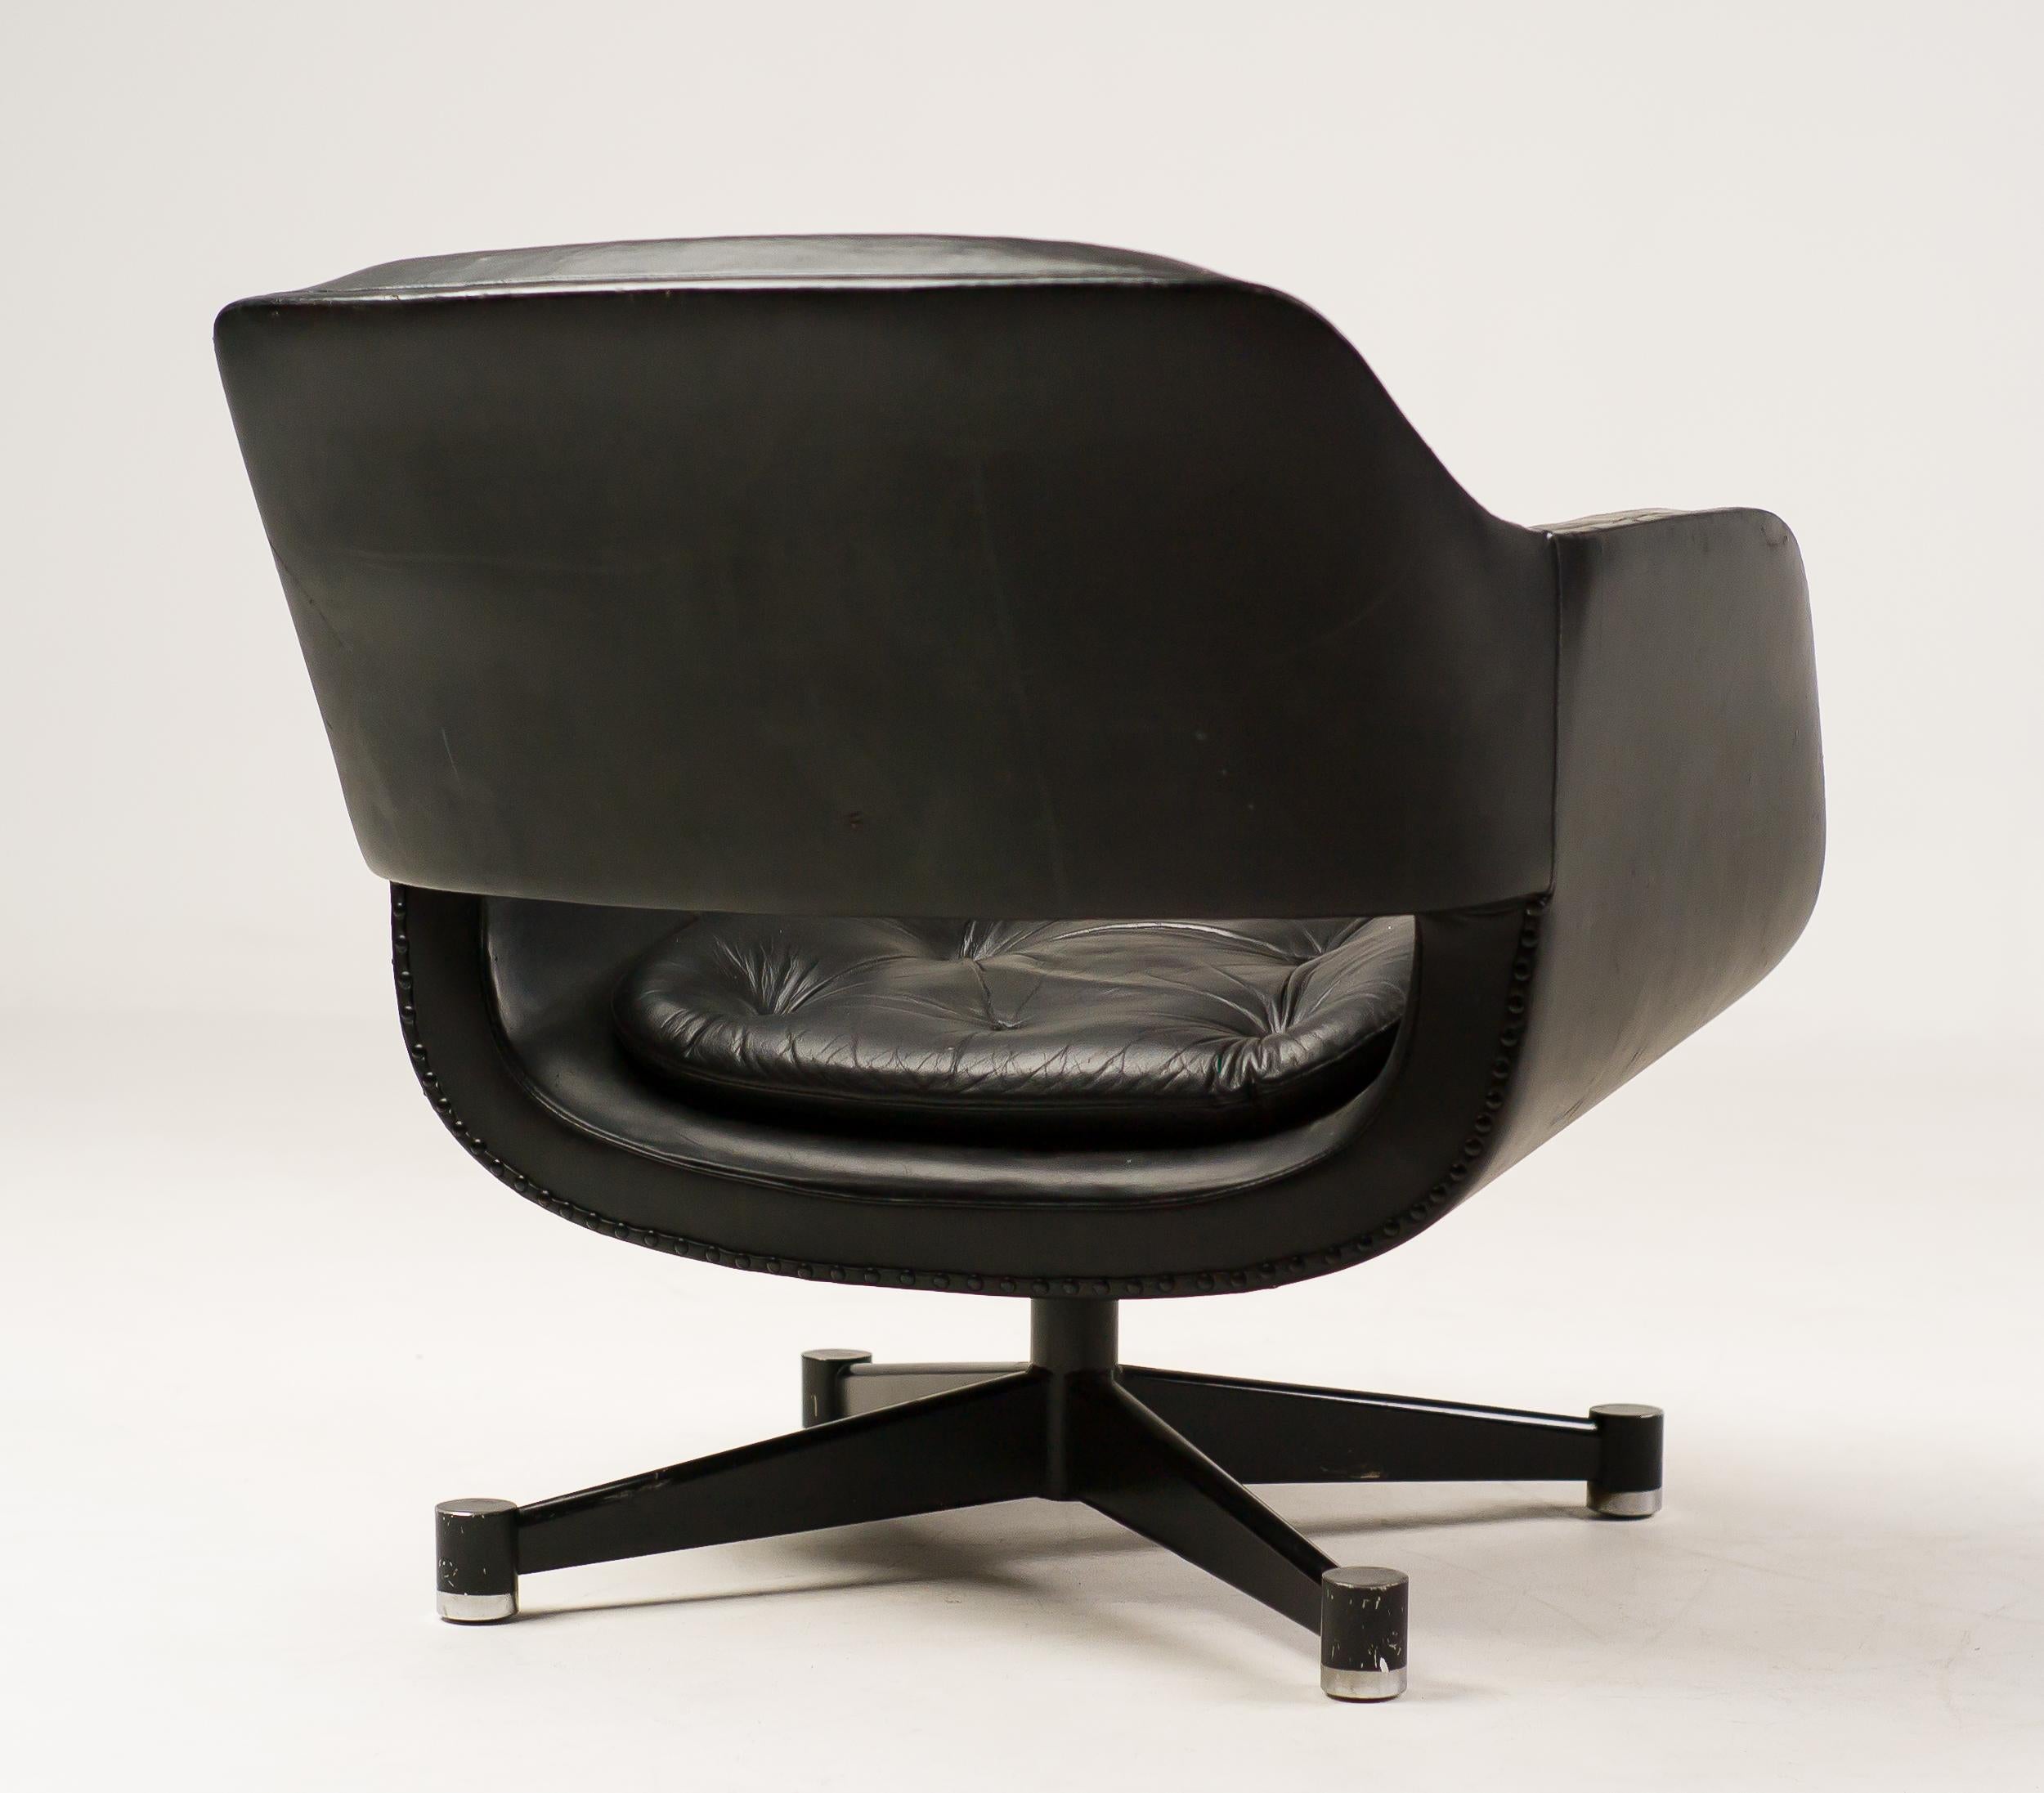 Lounge-Sessel aus schwarzem Leder, entworfen von Olli Mannermaa für Finnart Ab.
Seltener und sehr bequemer Drehsessel in originalem Vintage-Zustand.
Das Leder ist in gutem Zustand, die Arme haben Verschleiß, aber keine Risse.

Olli Mannermaa war der